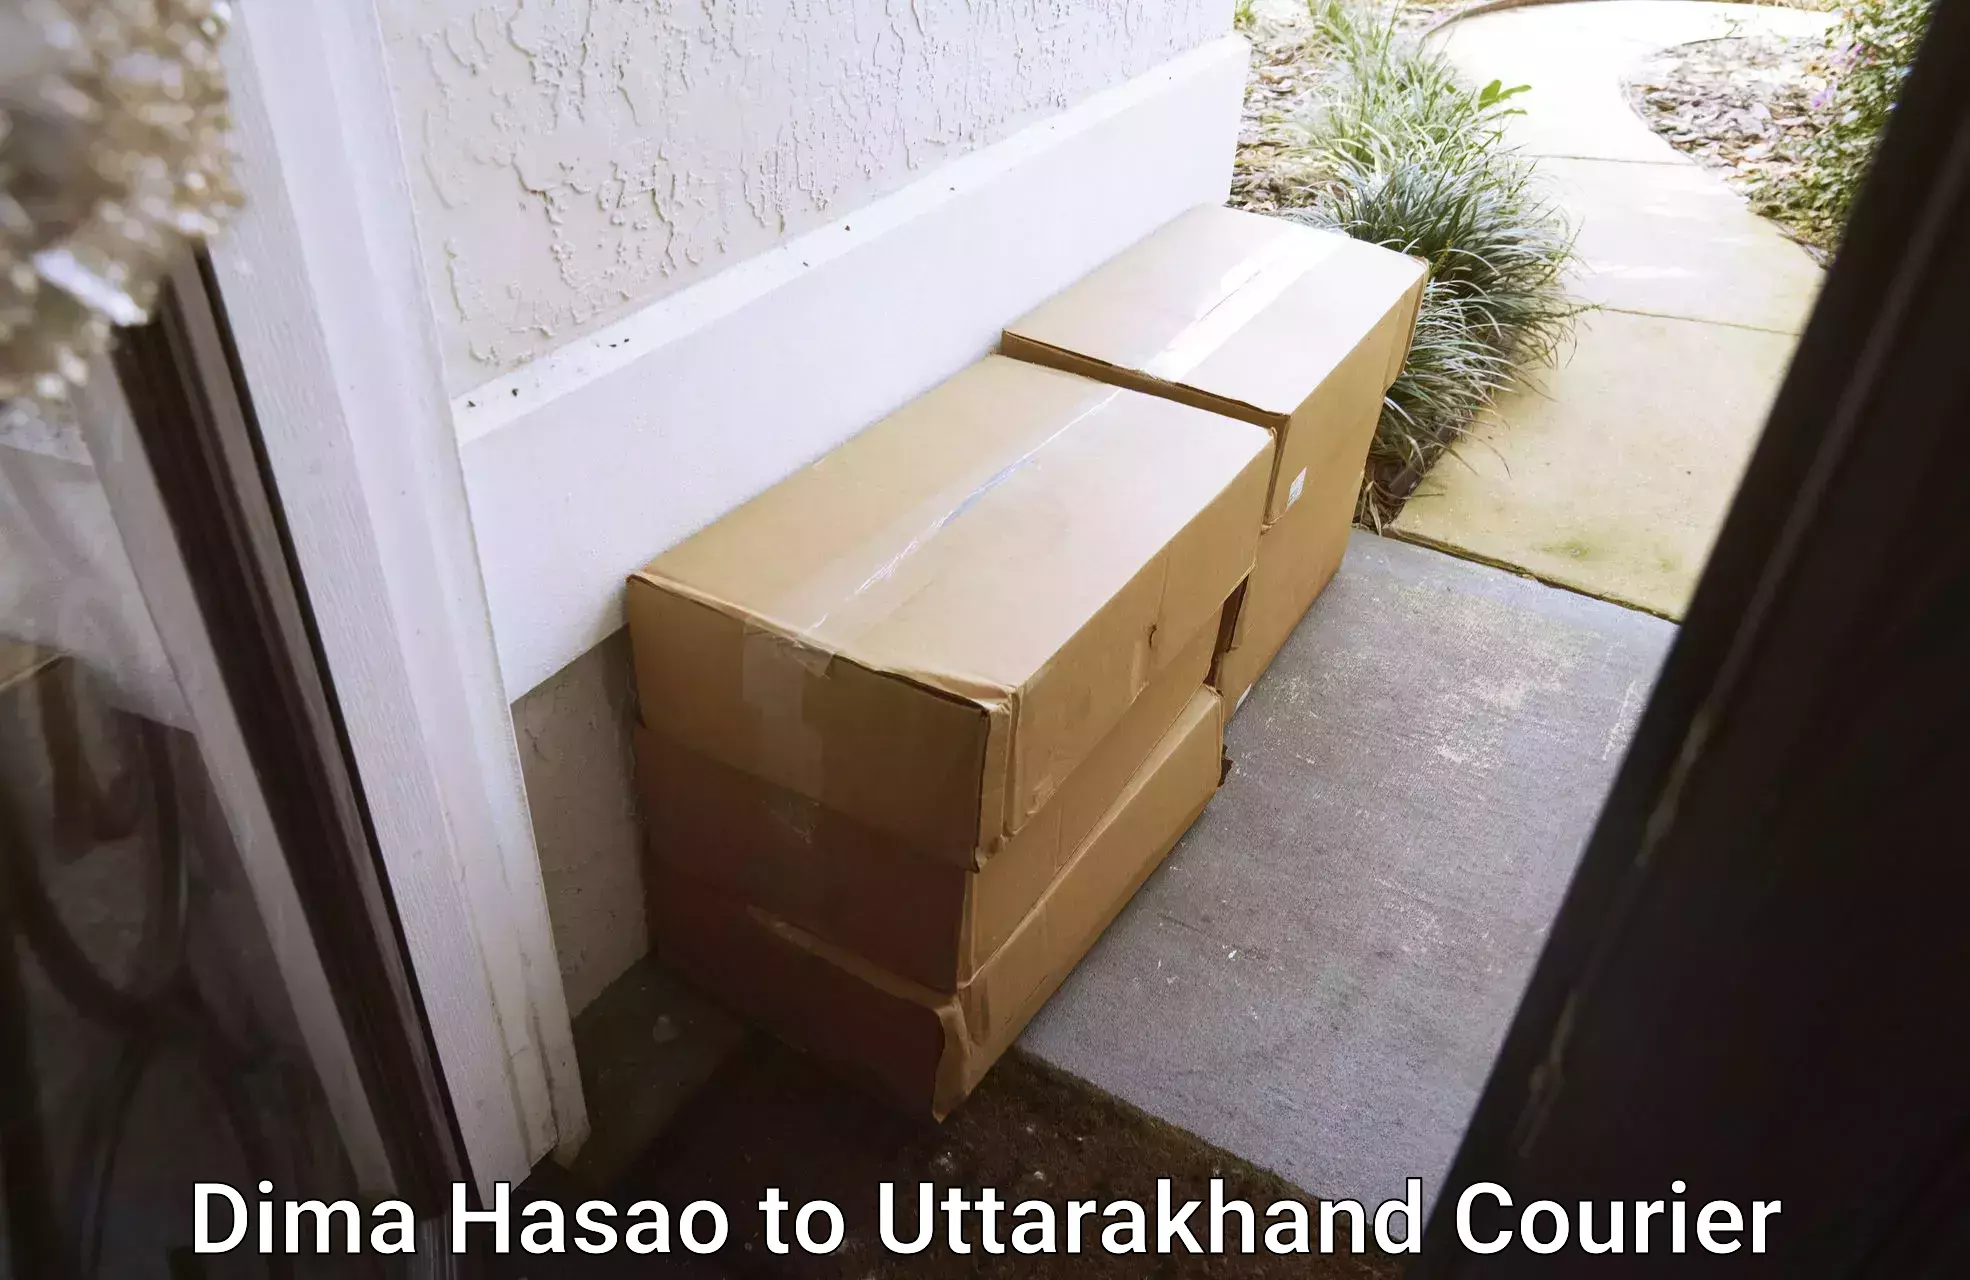 Ground shipping in Dima Hasao to Uttarakhand